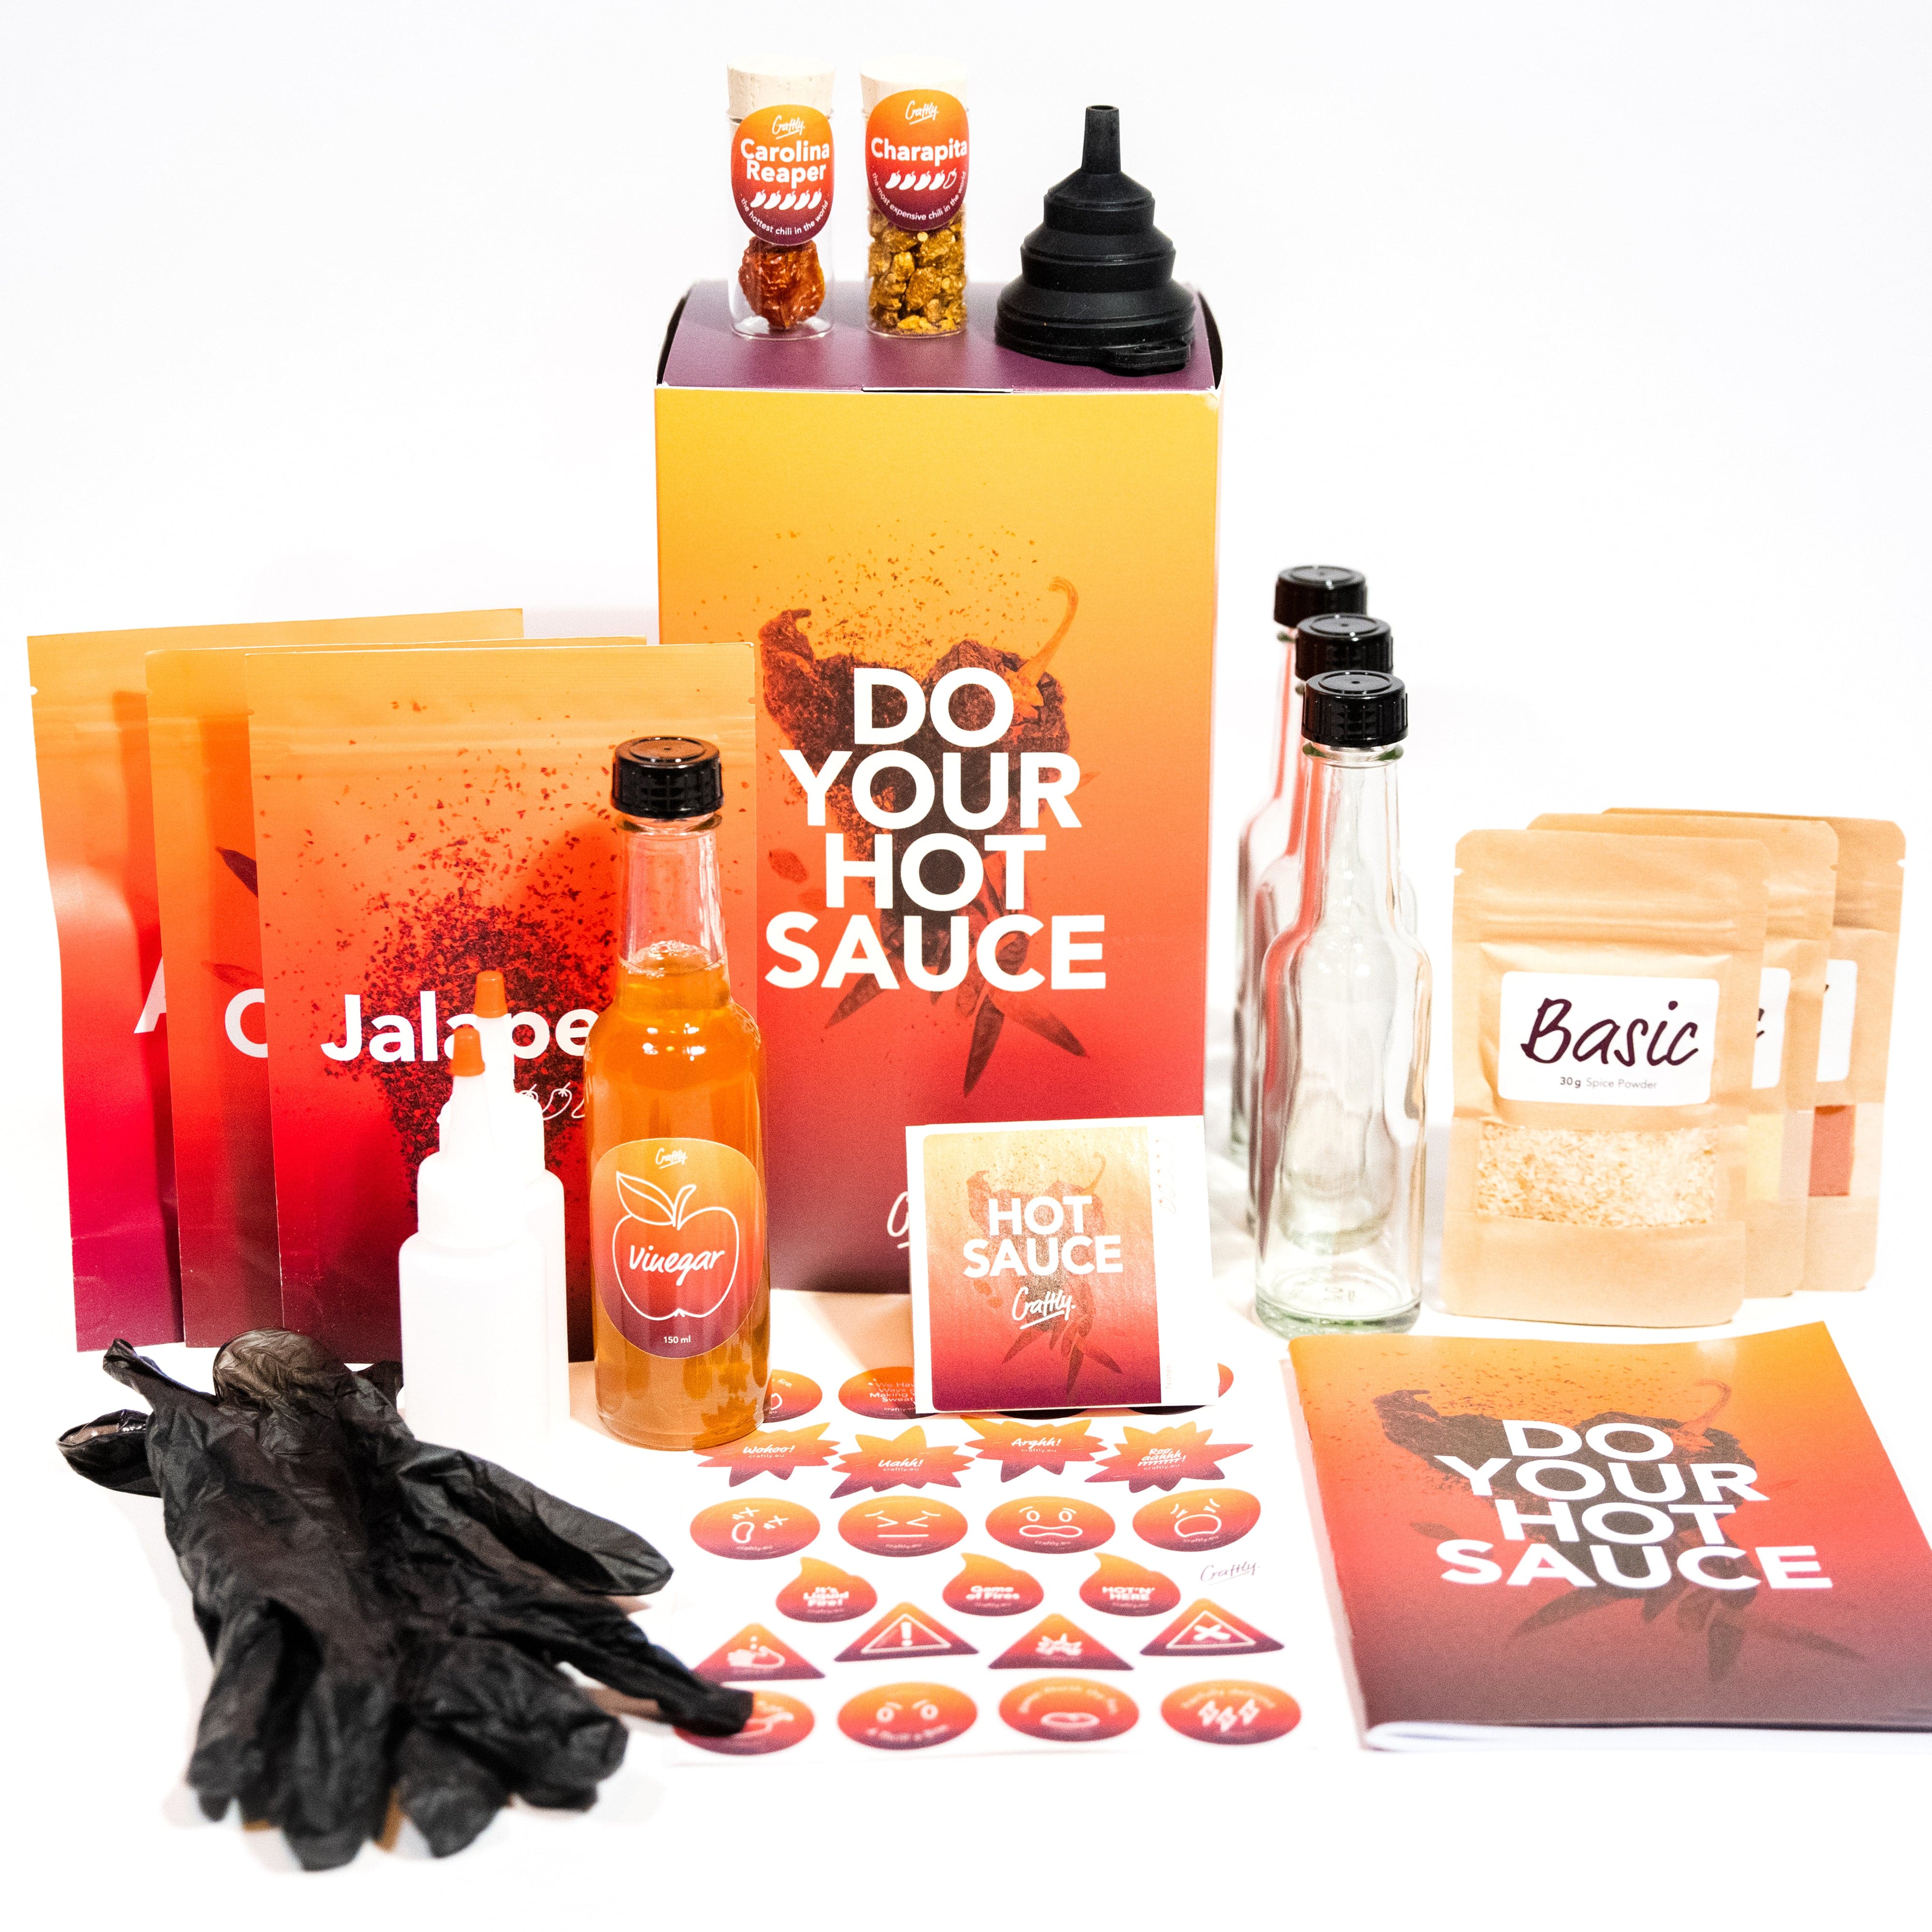 Hot sauce making kit